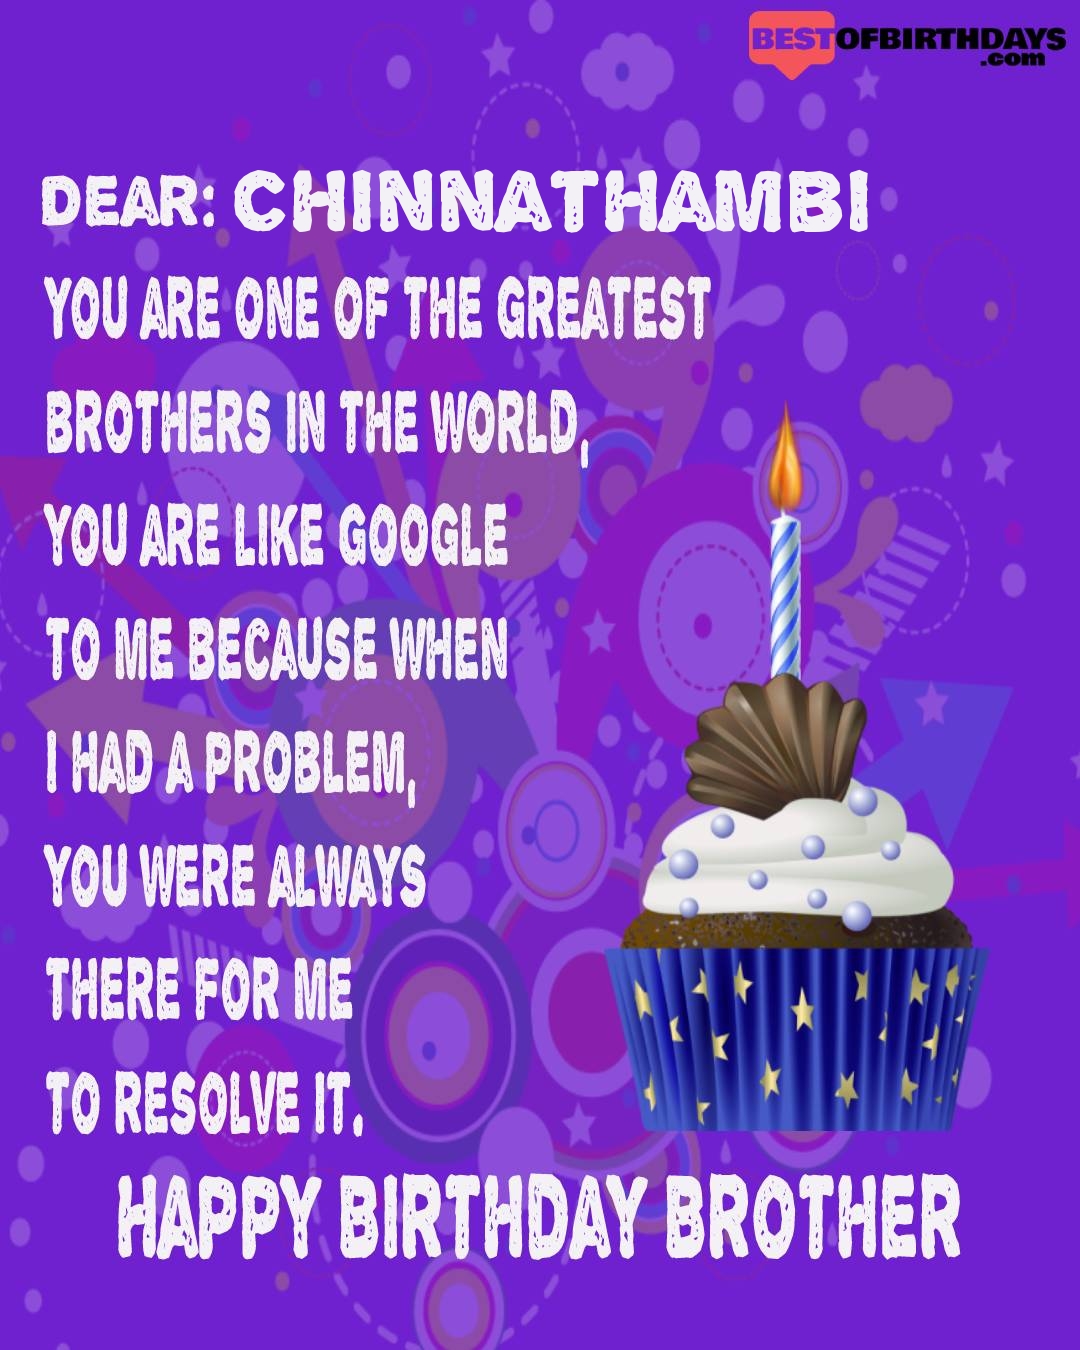 Happy birthday chinnathambi bhai brother bro